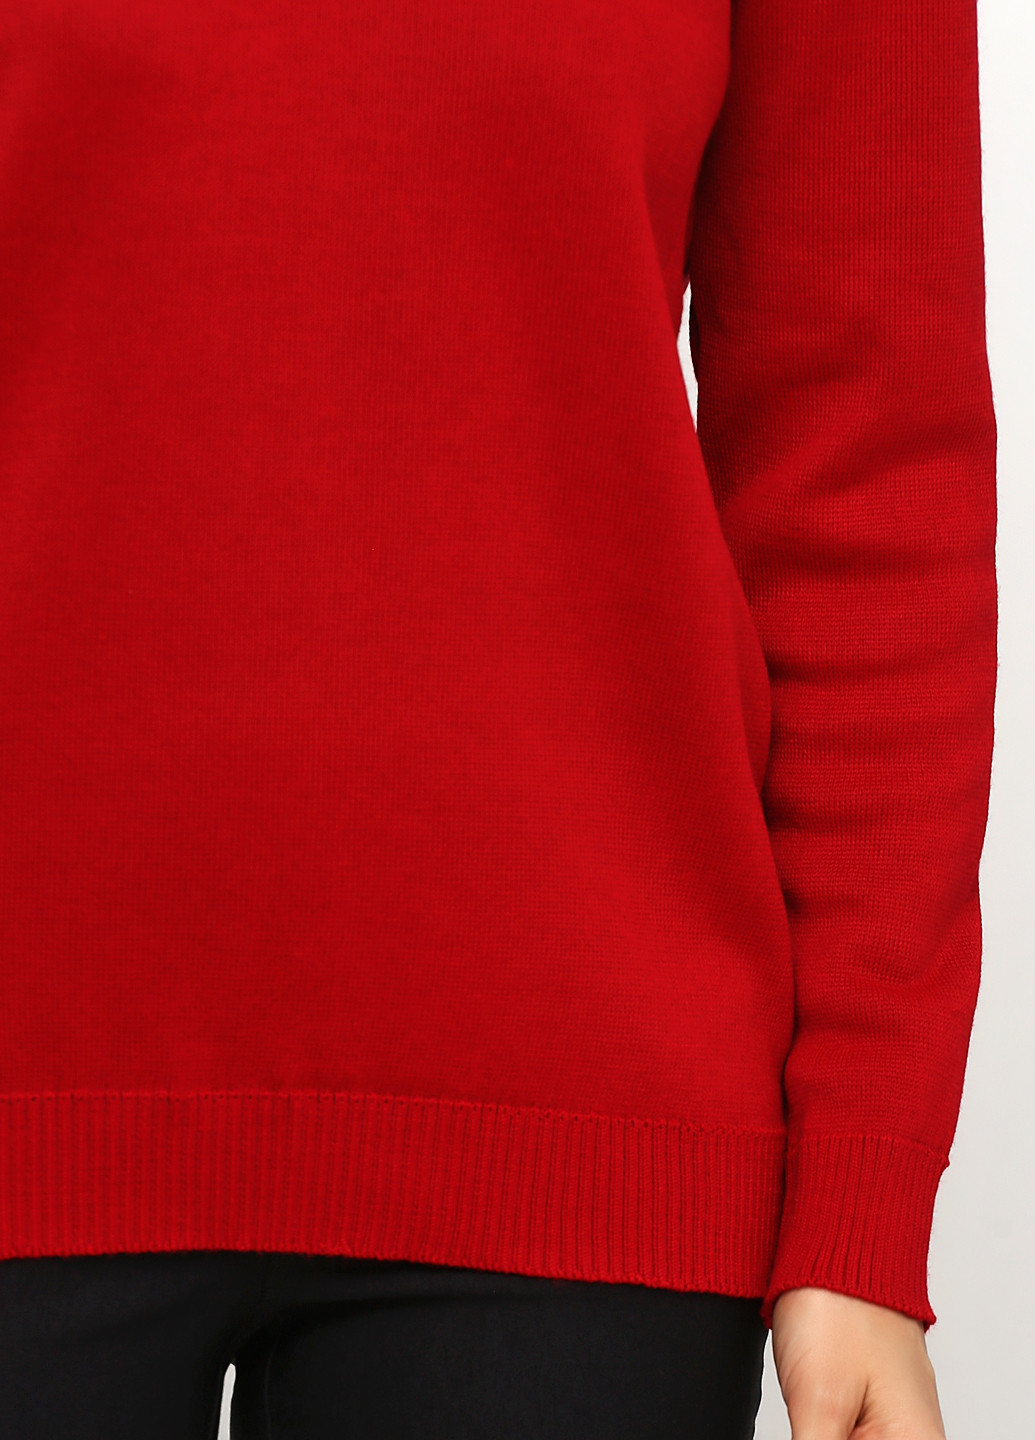 Красный демисезонный пуловер пуловер Only Women